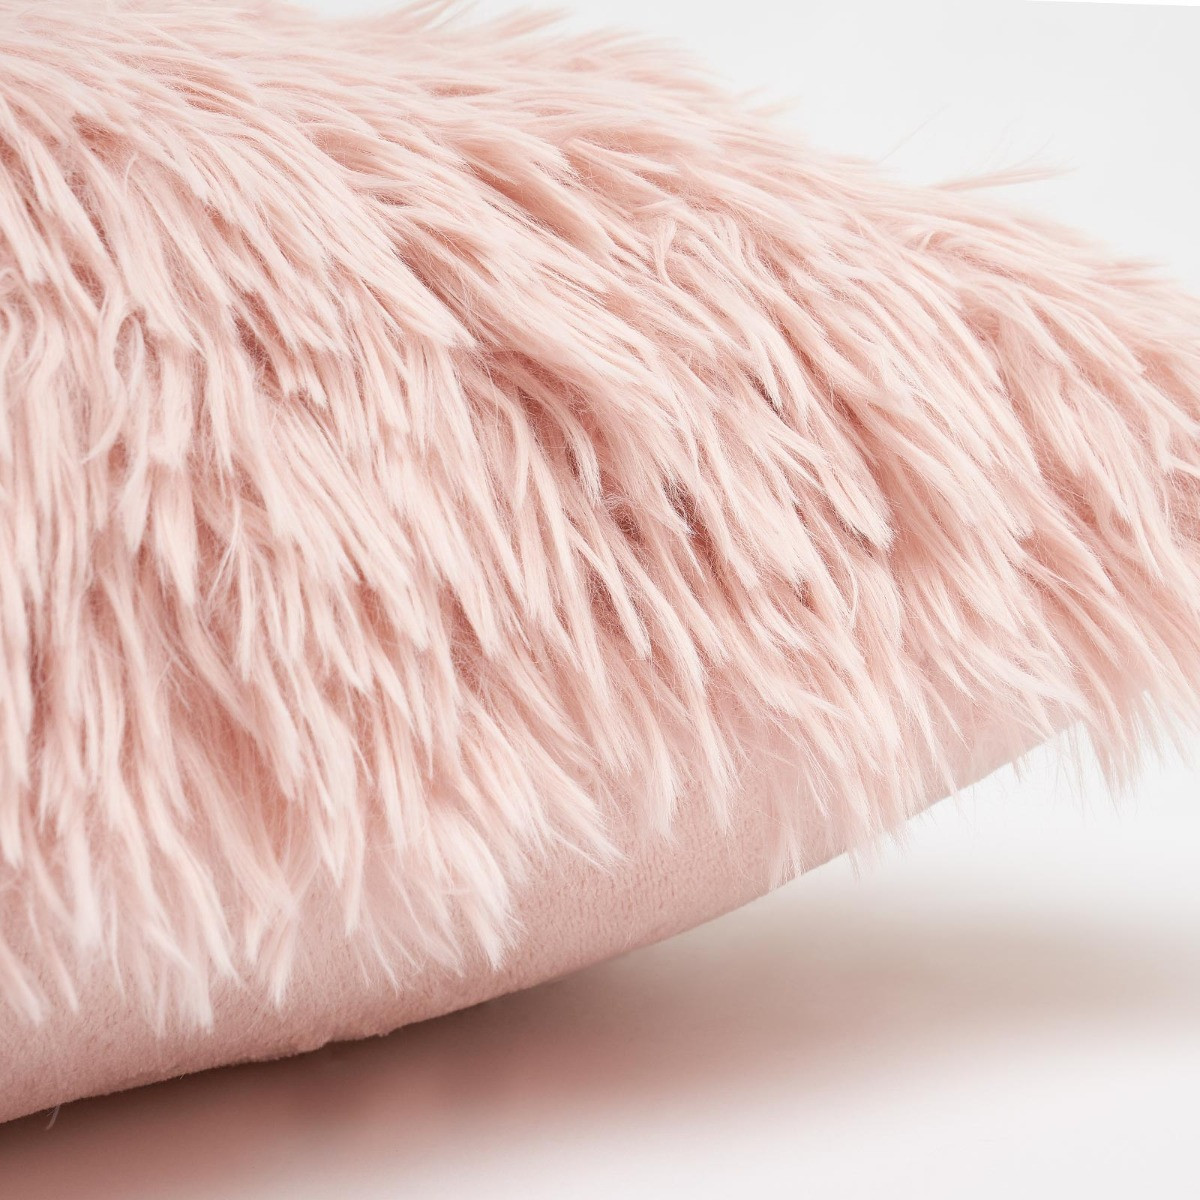 Sienna 2 Pack Faux Mongolian Fur Cushion Covers, Blush - 45 x 45cm>